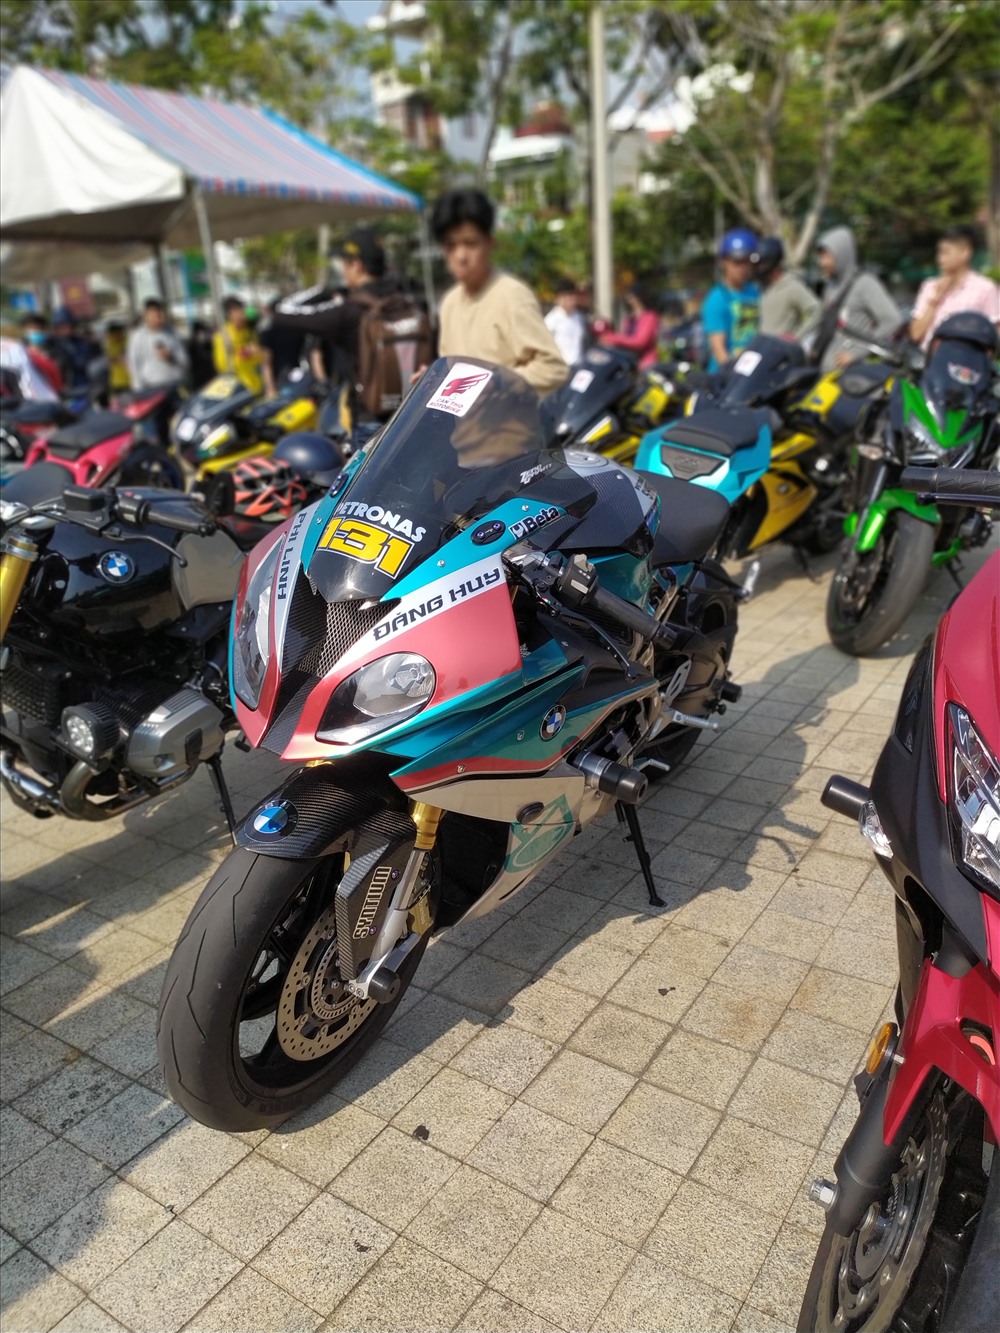 Đại hội lần này quy tụ trên 700 xe phân khối lớn (PKL) cùng 1.000 bikers đến từ hàng chục tỉnh, thành trong cả nước